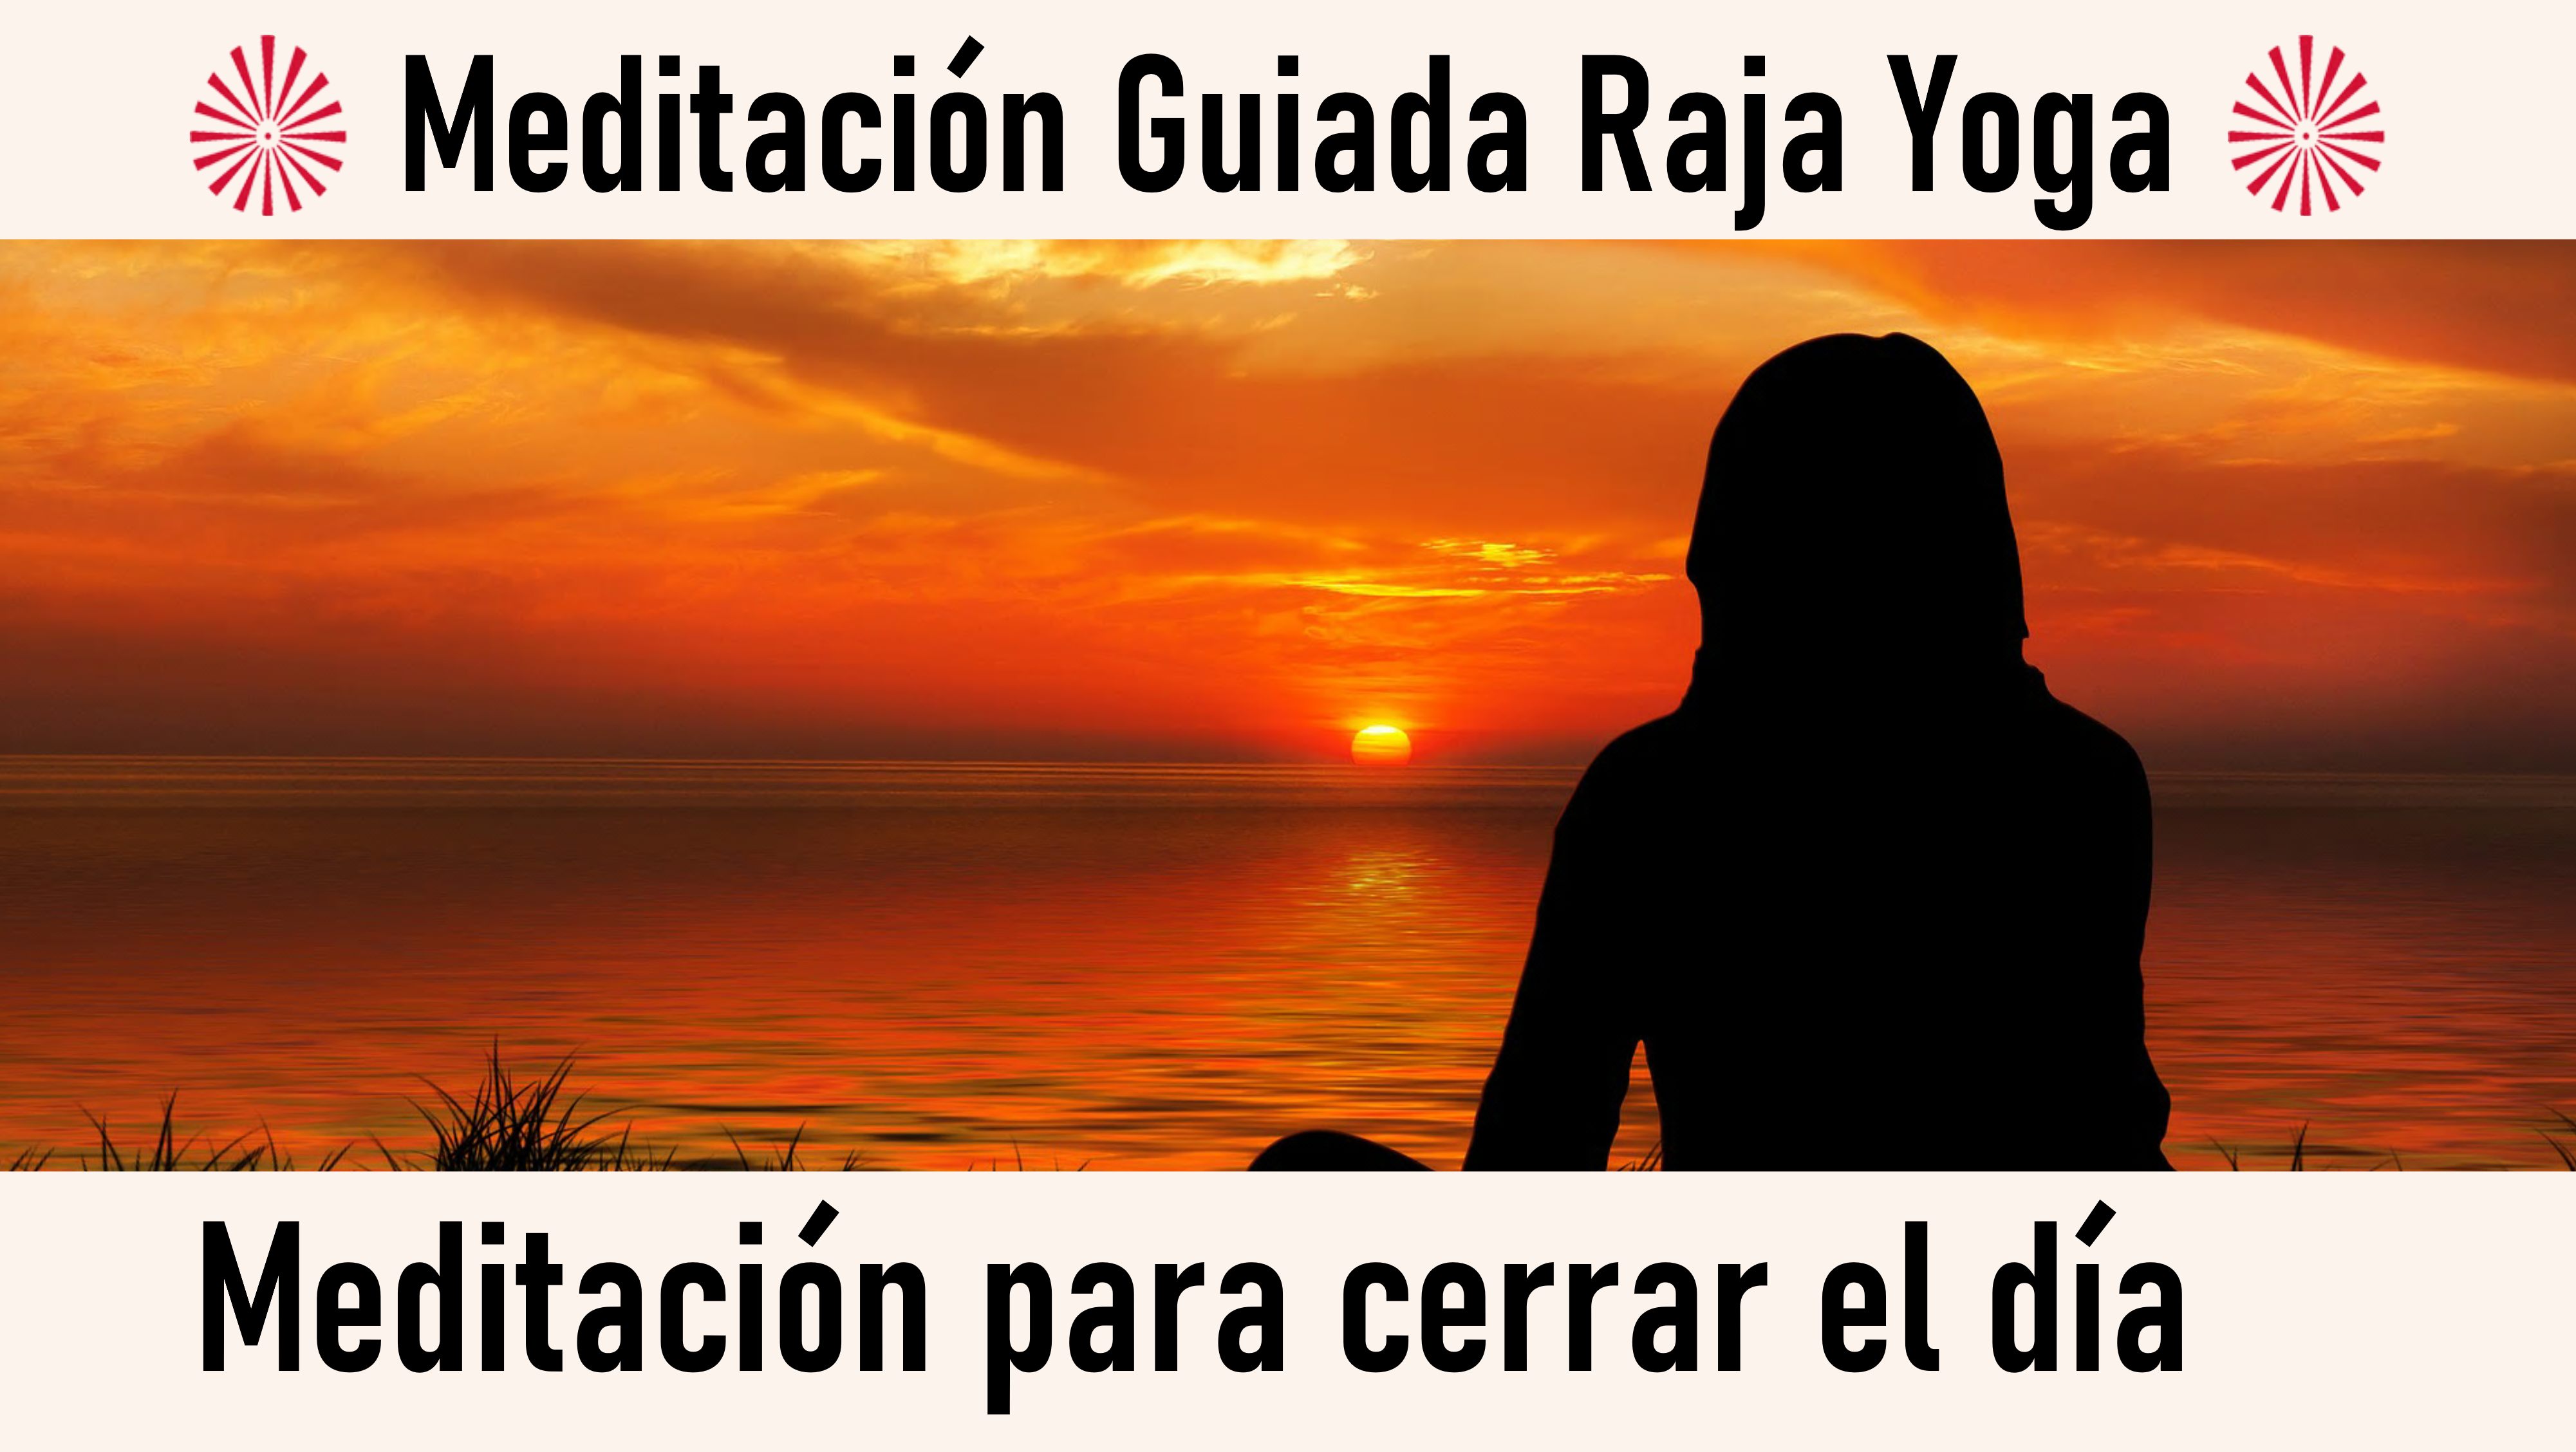 Meditación Raja Yoga: Meditación para cerrar el día (25 Septiembre 2020) On-line desde Madrid